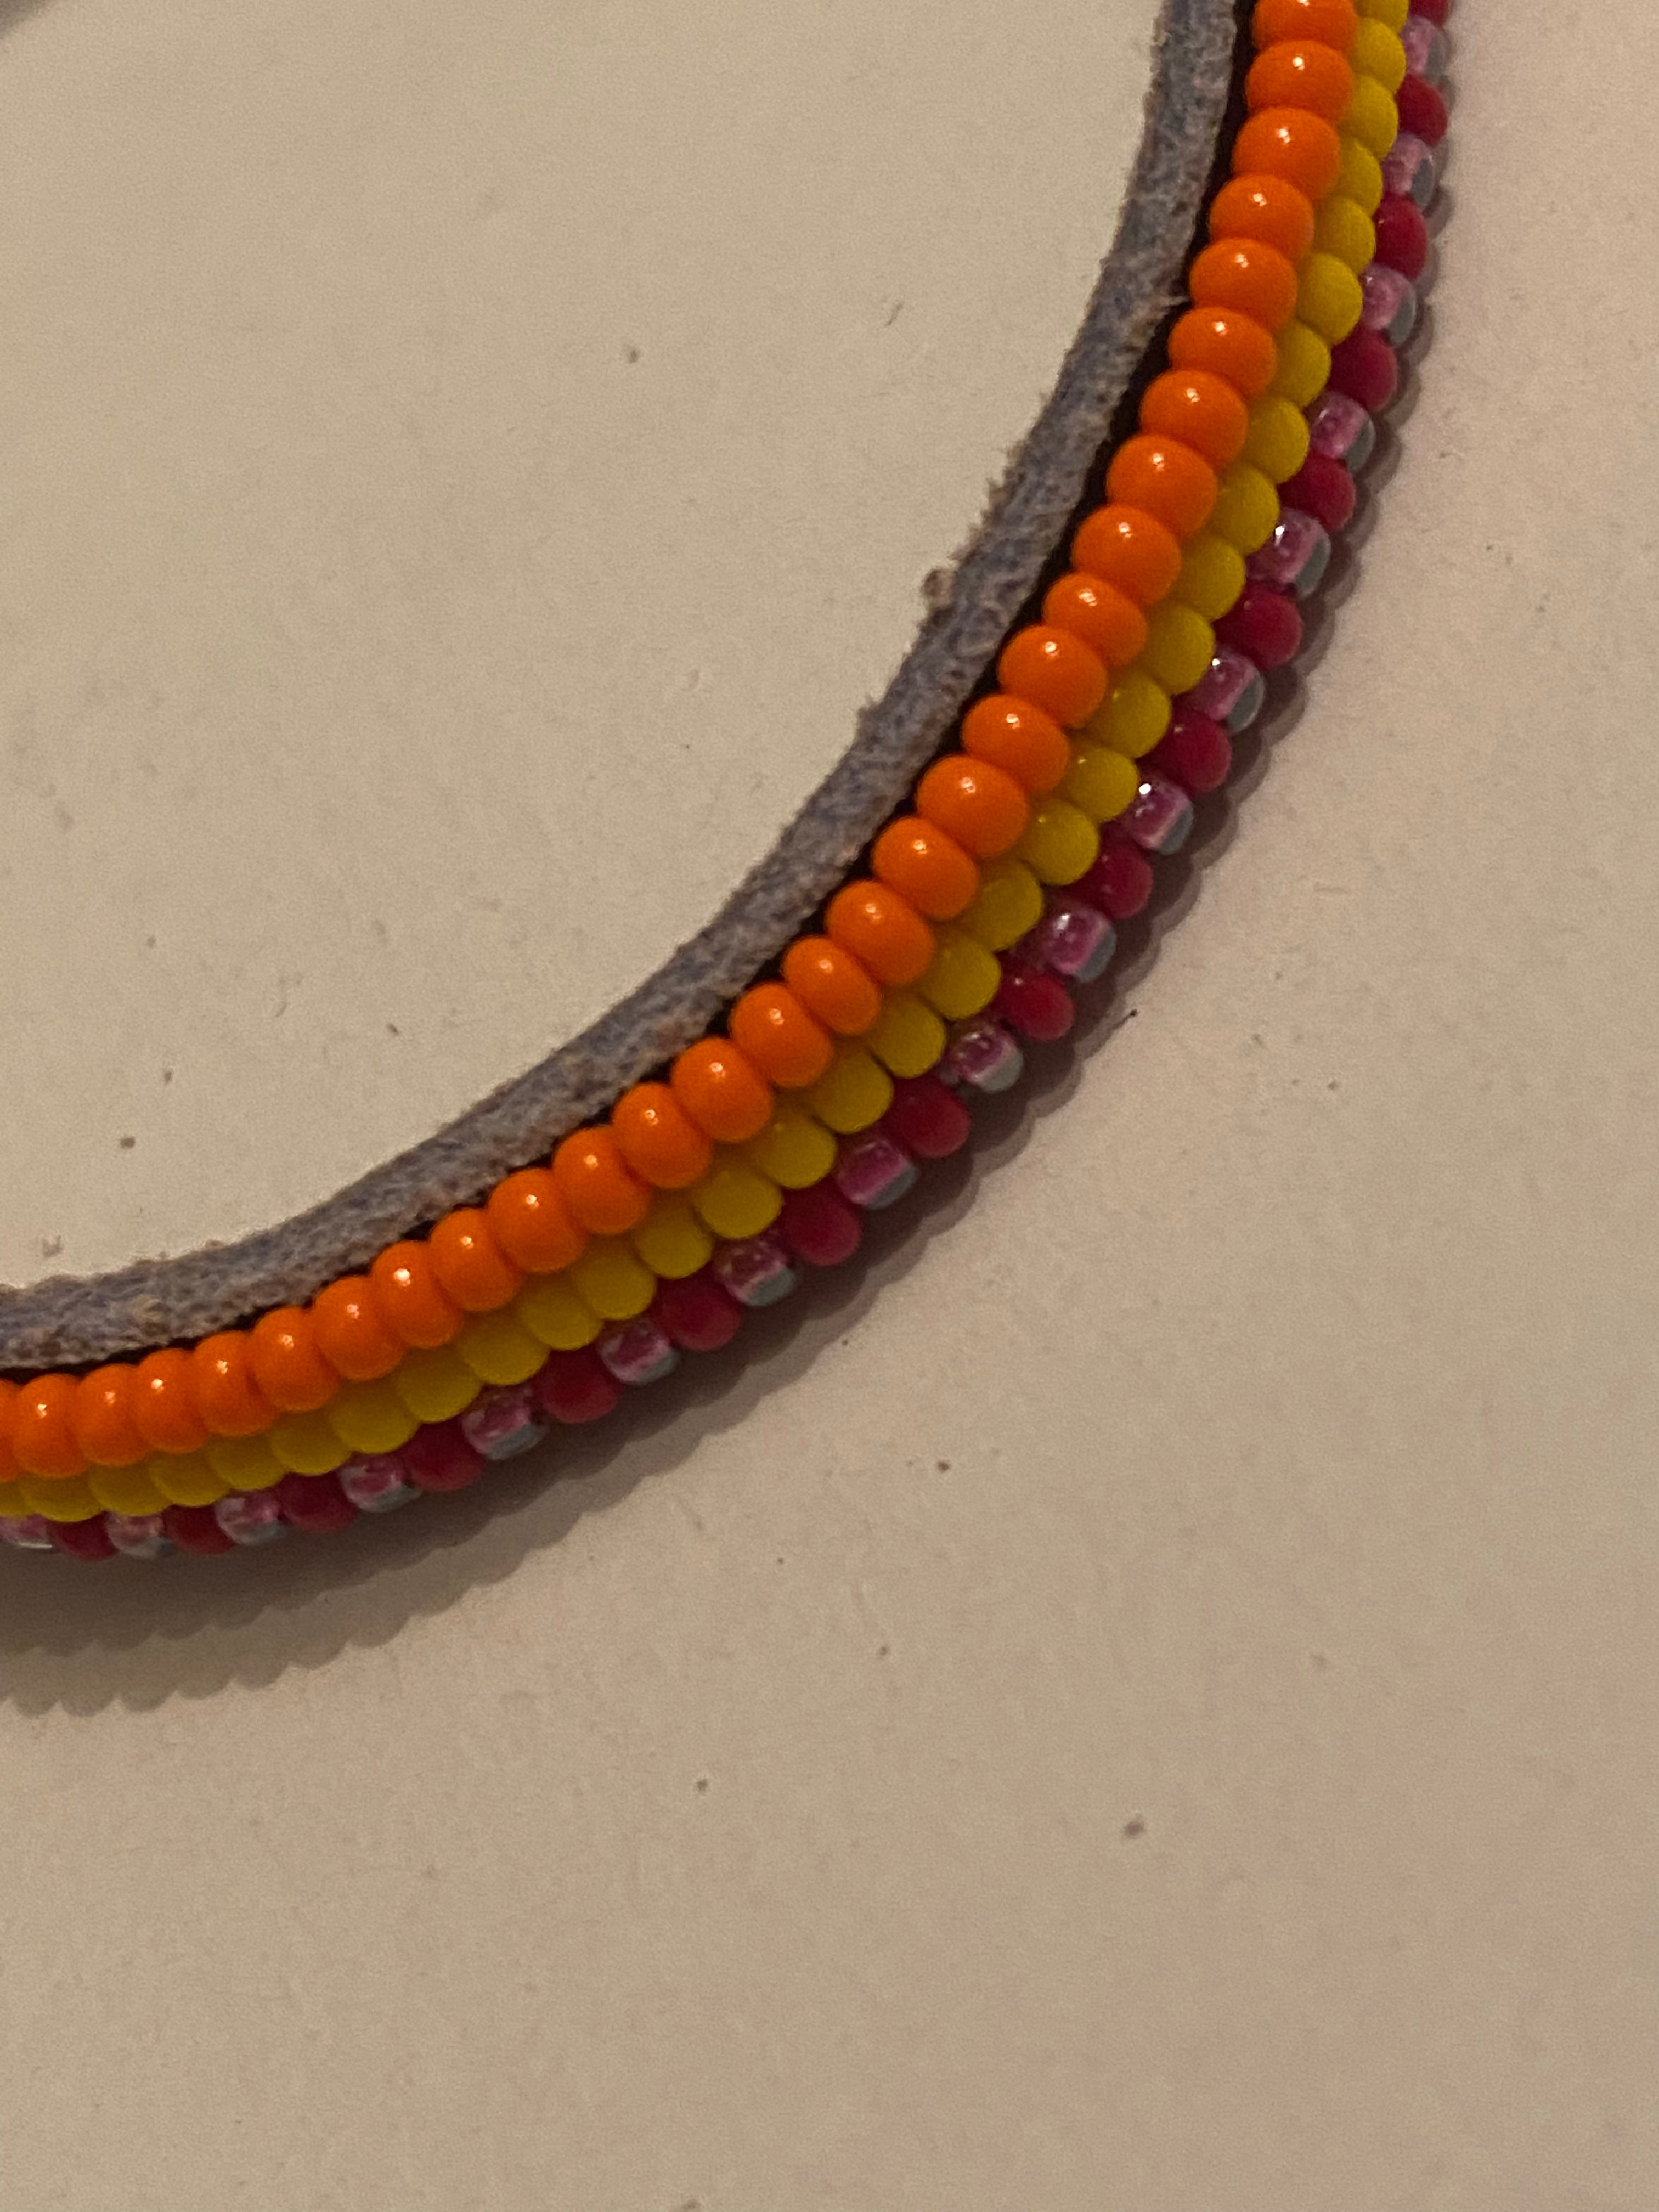 Armband orange/yellow/pink & red long stripes